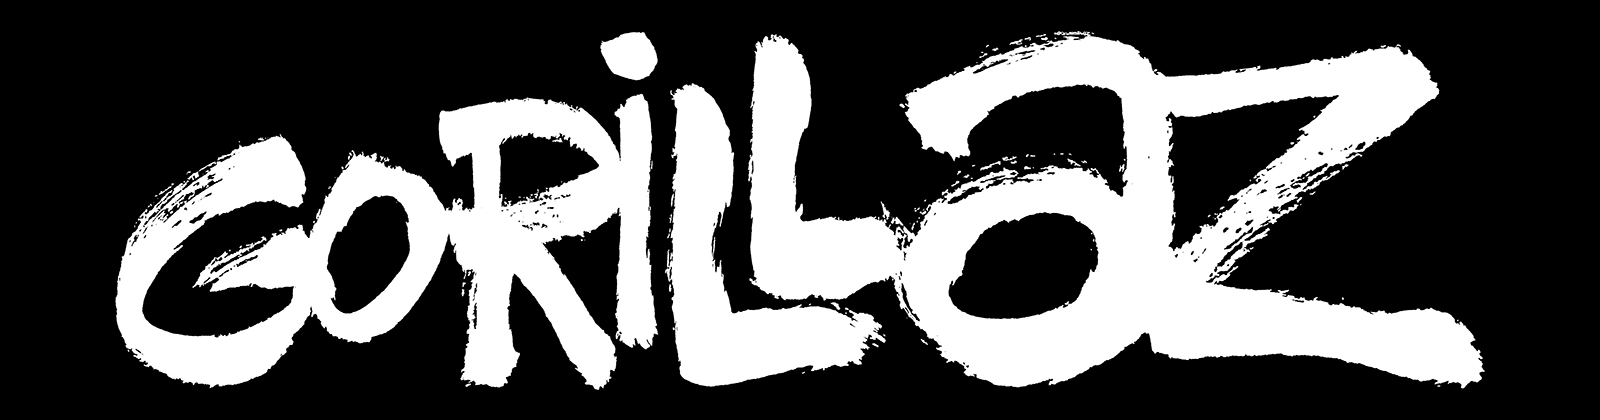 Gorillaz Logo Png White - HD Wallpaper 